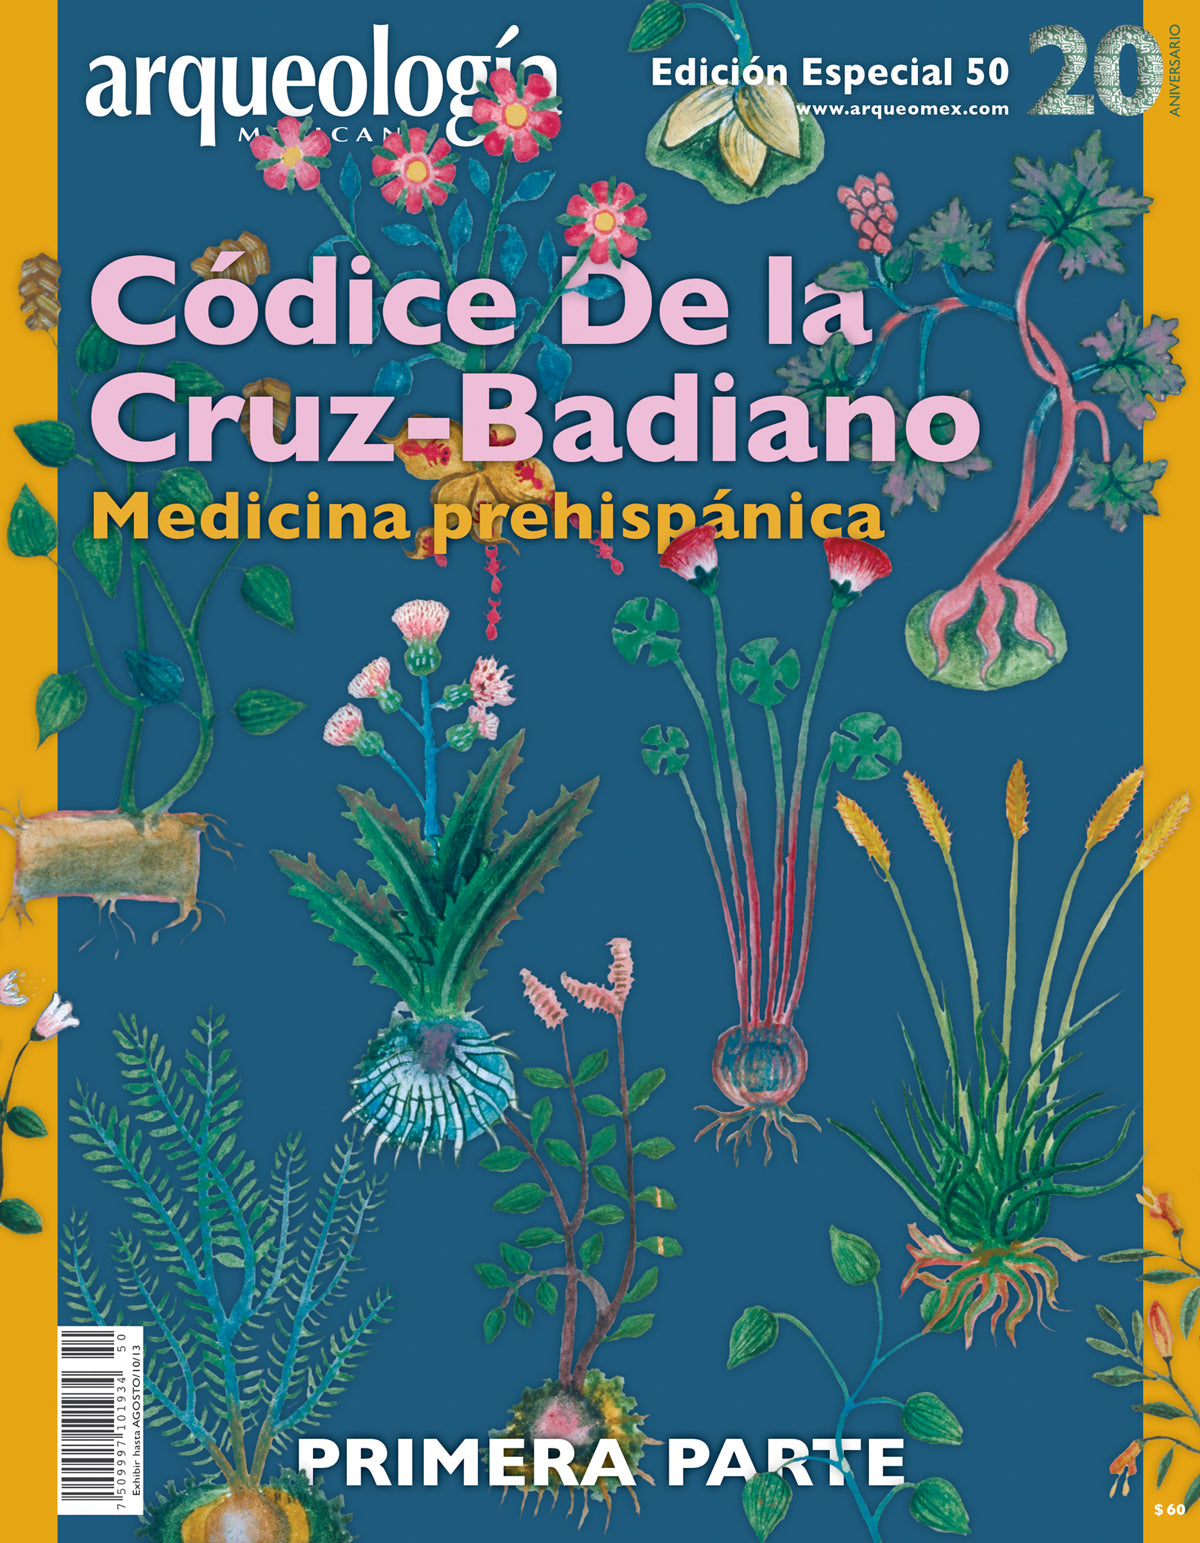 Códice De la Cruz-Badiano. Medicina prehispánica. Primera parte